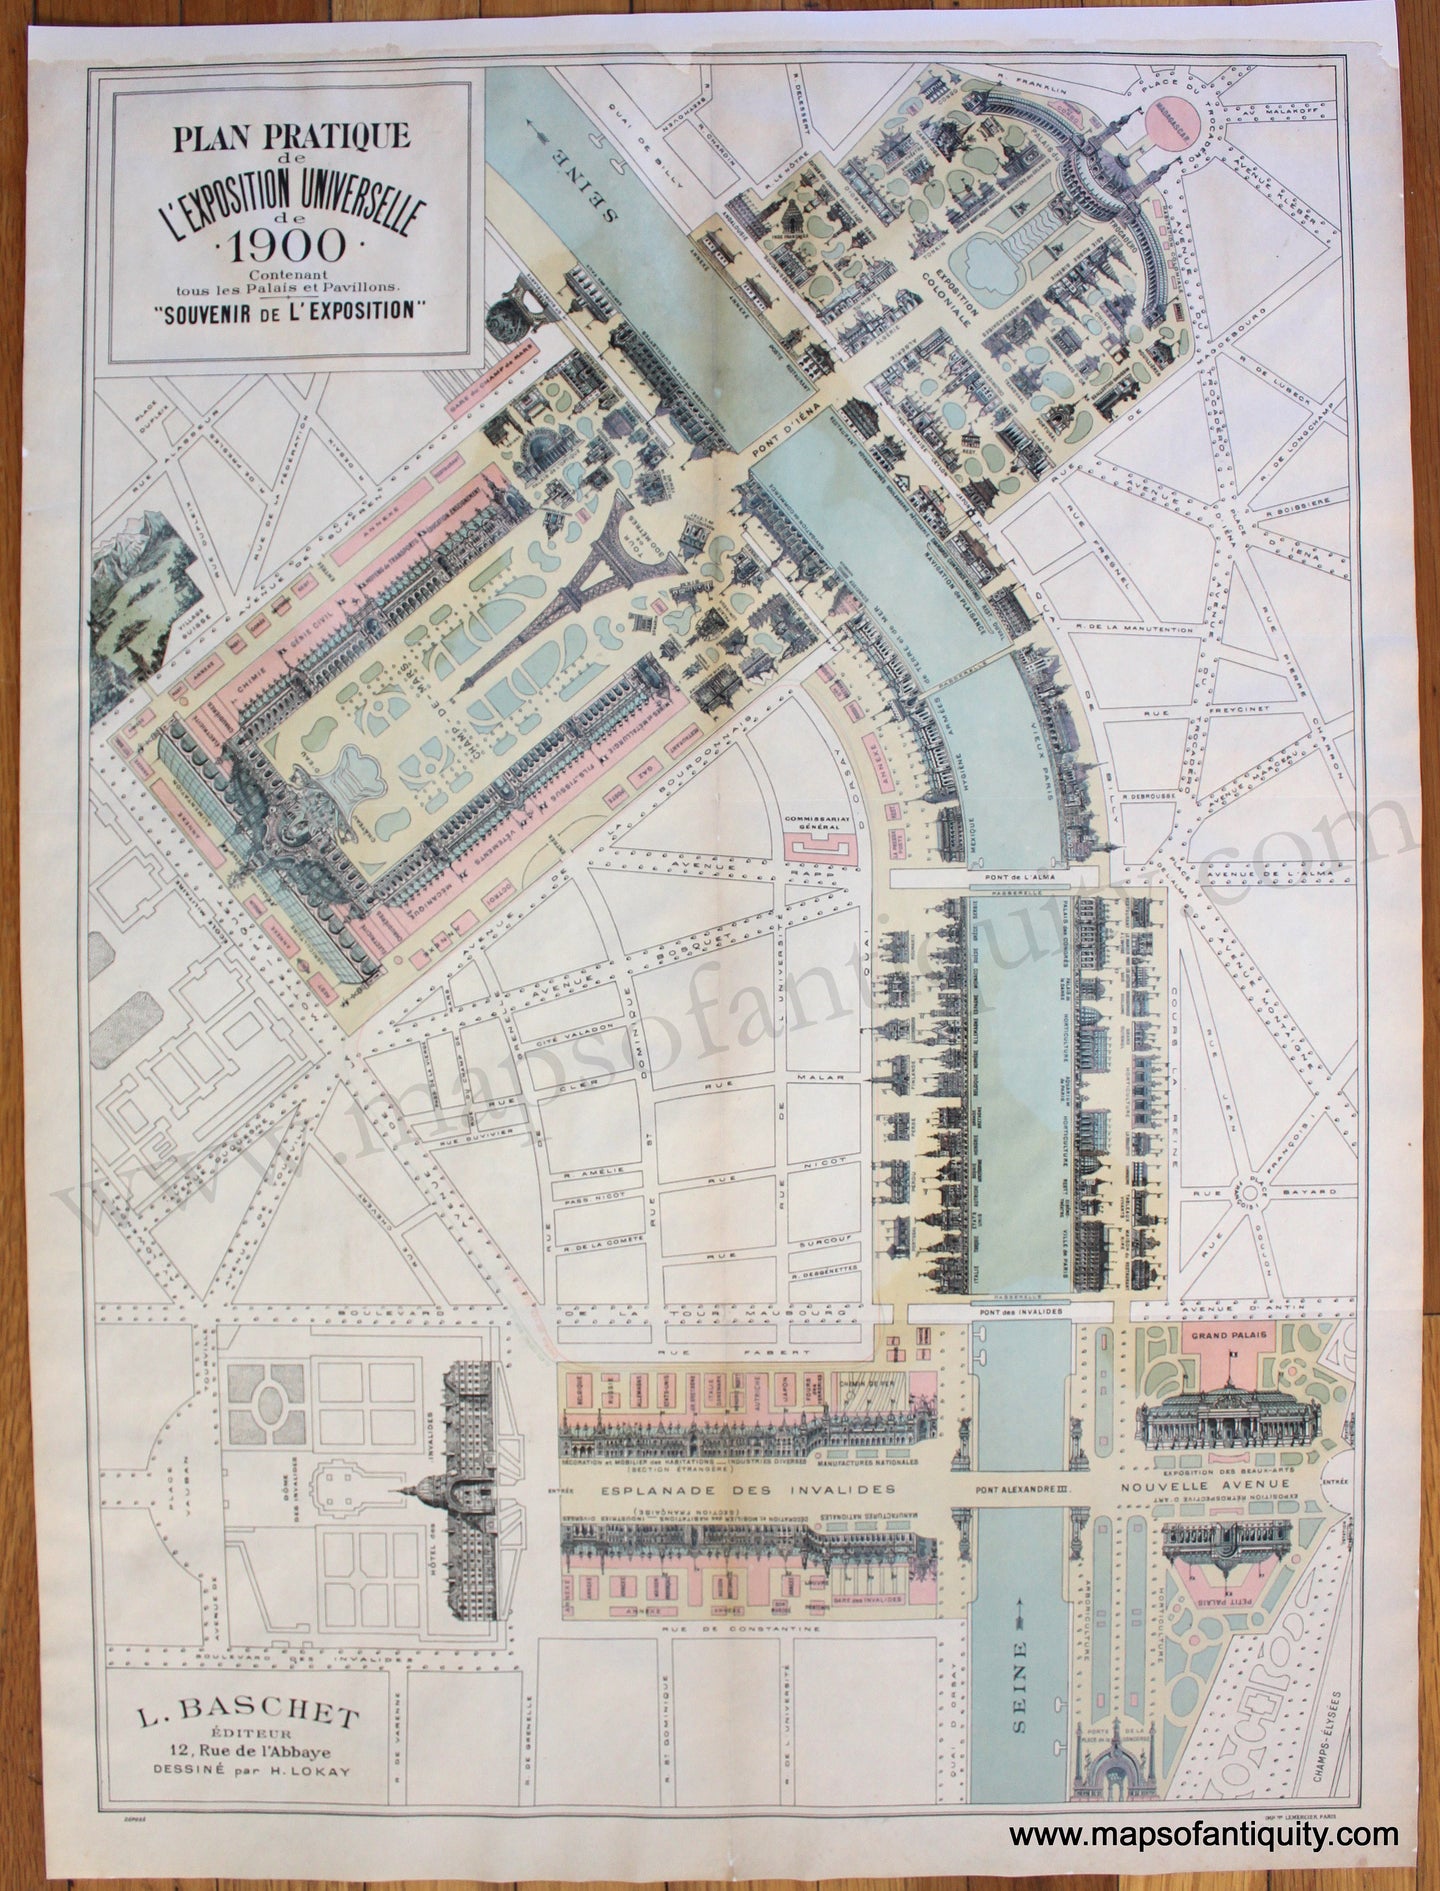 Antique-Pictorial-Map-Plan-Pratique-de-l'Exposition-Universelle-de-1900---Paris-Europe-France-1900-Baschet-/-Lokay-Maps-Of-Antiquity-1900s-20th-century